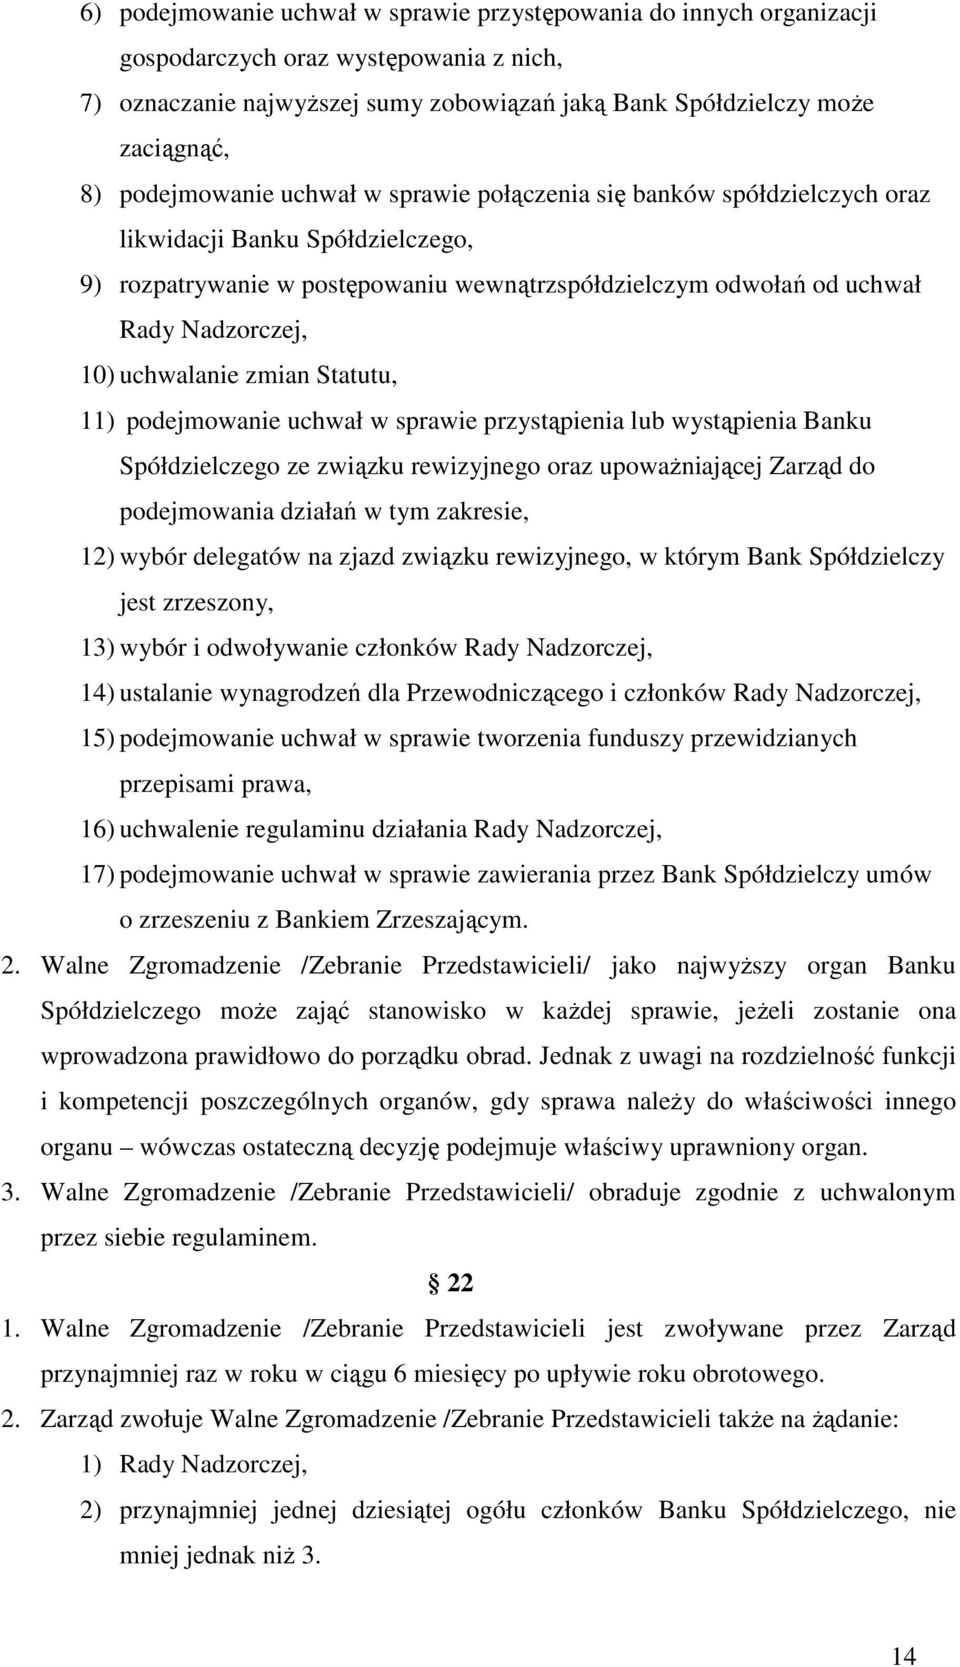 uchwalanie zmian Statutu, 11) podejmowanie uchwał w sprawie przystąpienia lub wystąpienia Banku Spółdzielczego ze związku rewizyjnego oraz upoważniającej Zarząd do podejmowania działań w tym